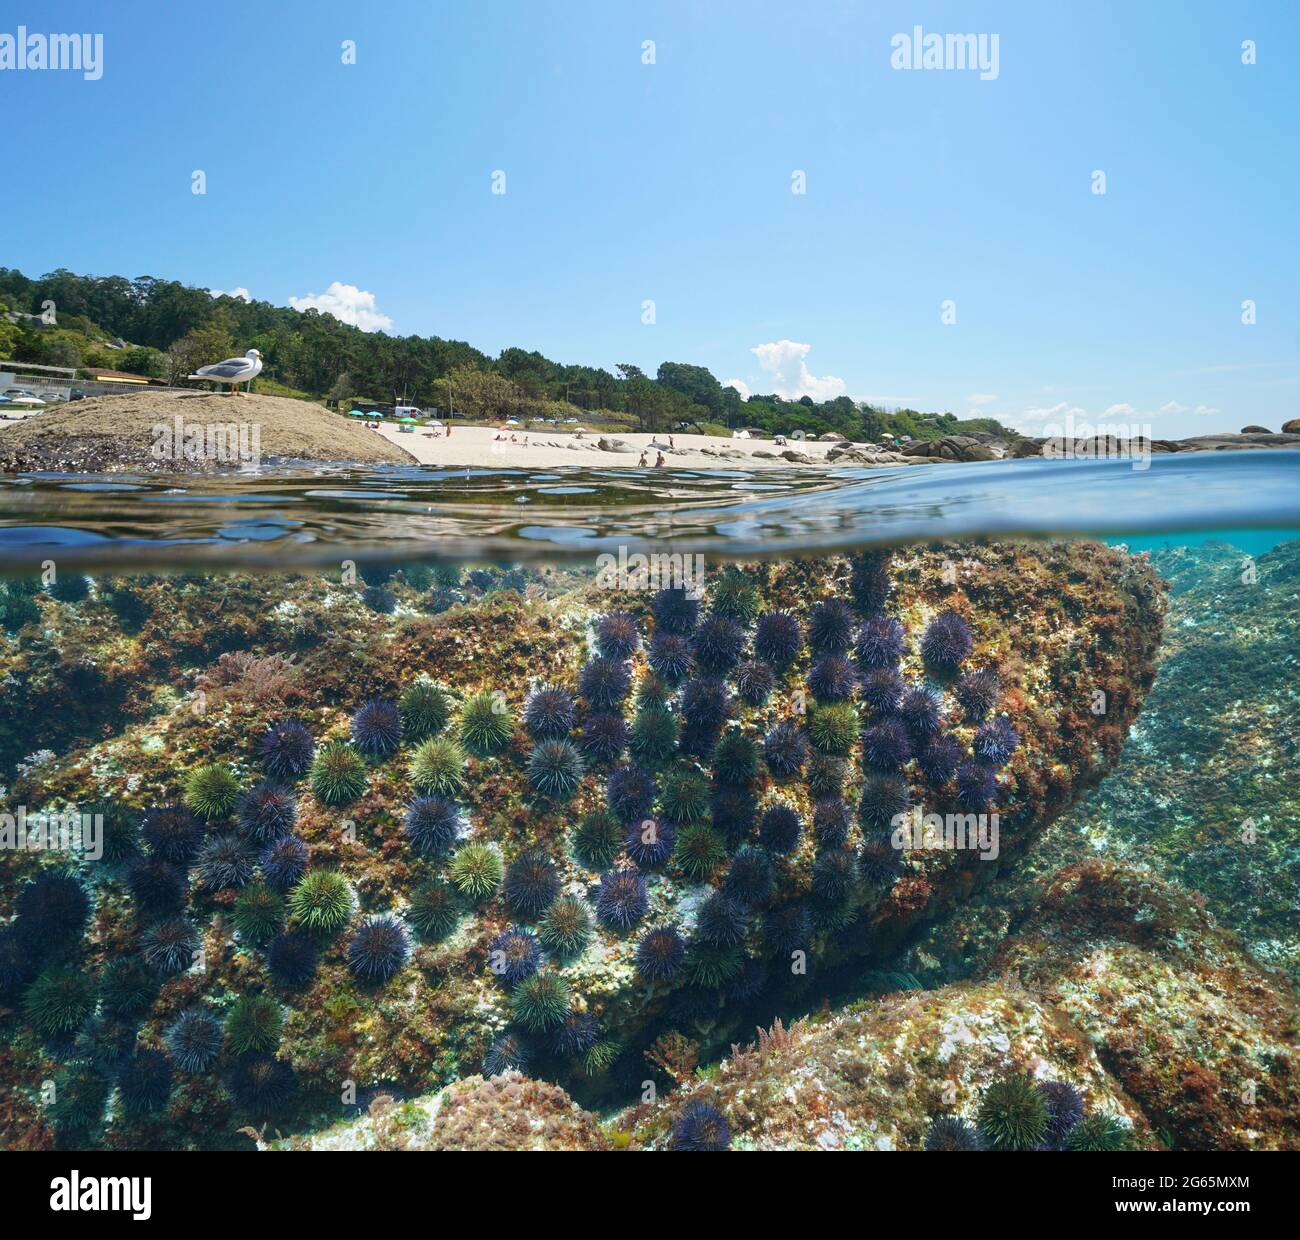 Strand und Seeigel unter Wasser, Küste von Galicien in Spanien, Split Blick über und unter der Wasseroberfläche, Atlantischer Ozean, Bueu, Pontevedra Provinz Stockfoto